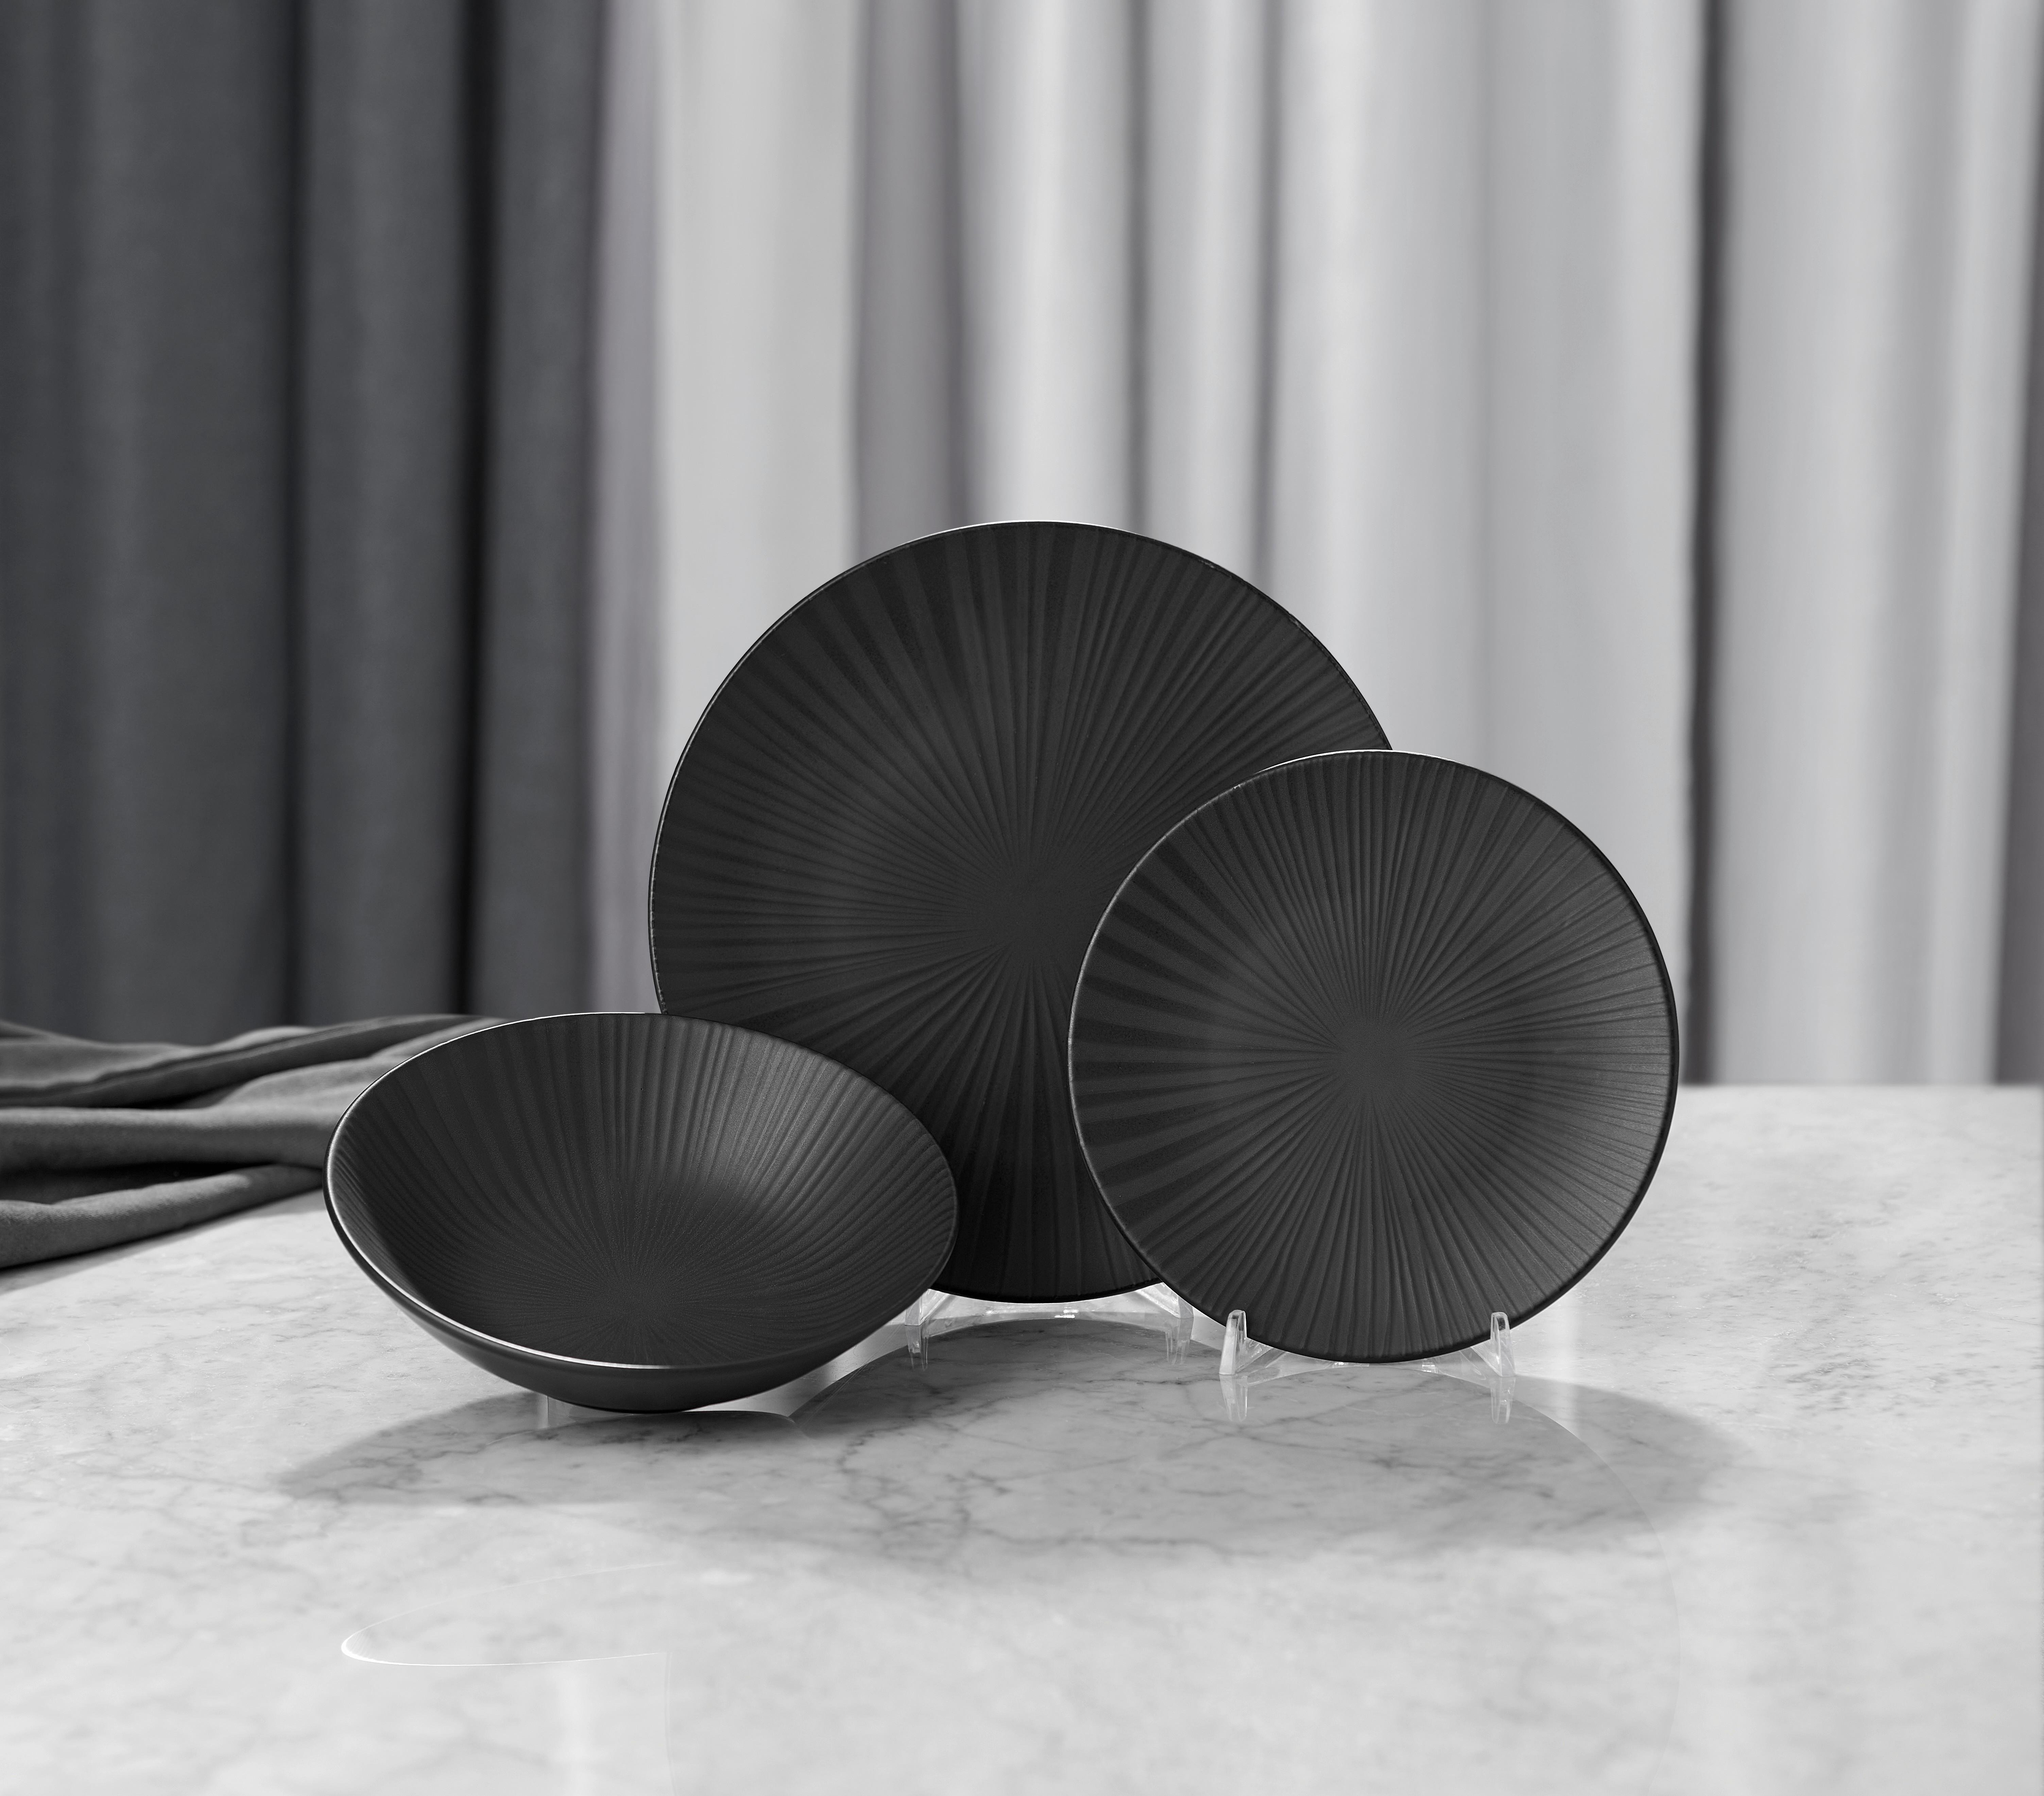 Jídelní Souprava Black, 12dílná - černá, Moderní, keramika - Premium Living